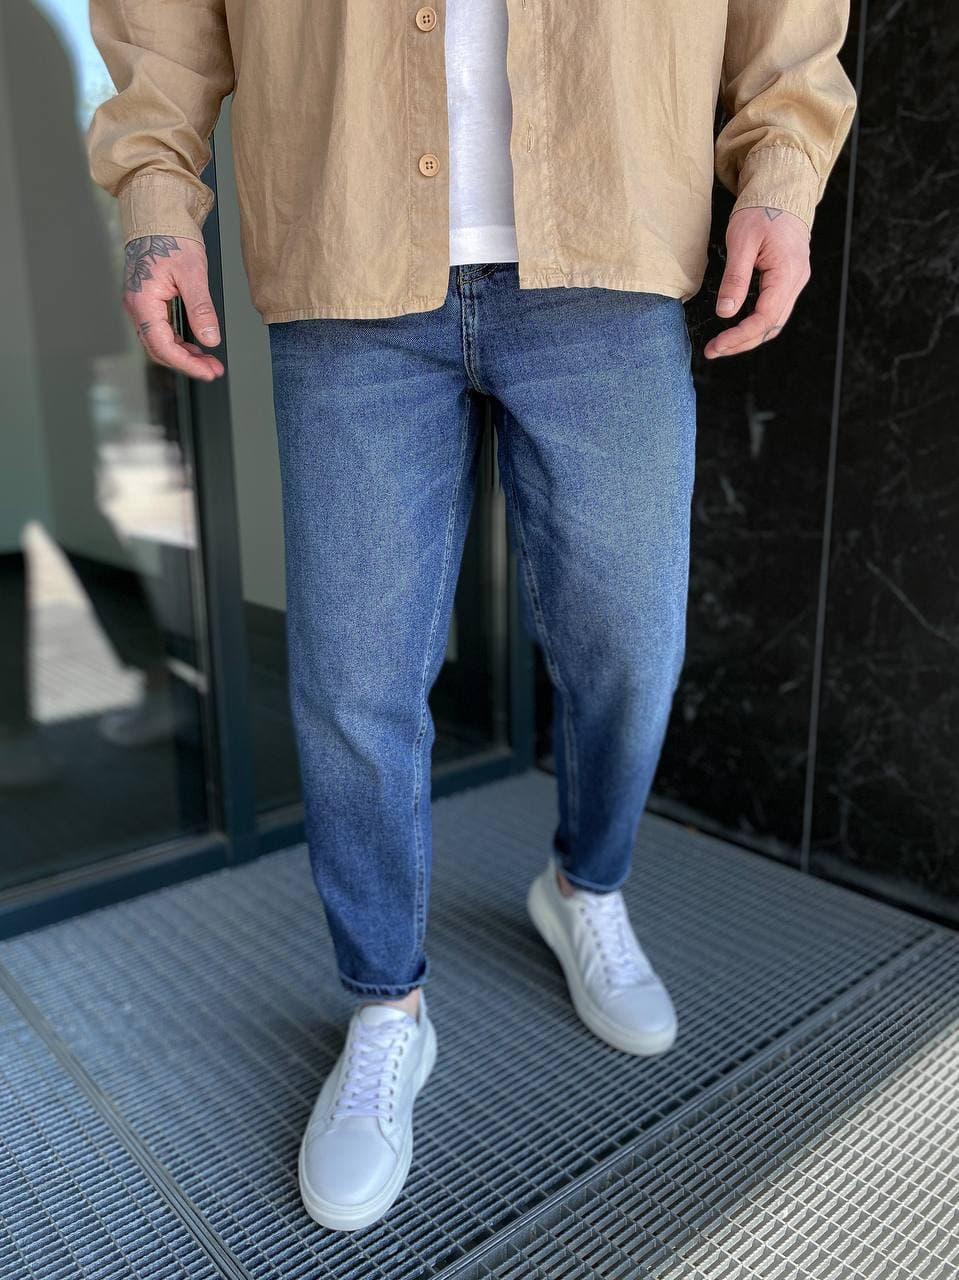 

Мужские стильные качественные джинсы МОМ (синие). Мужские турецкие джинсы 30